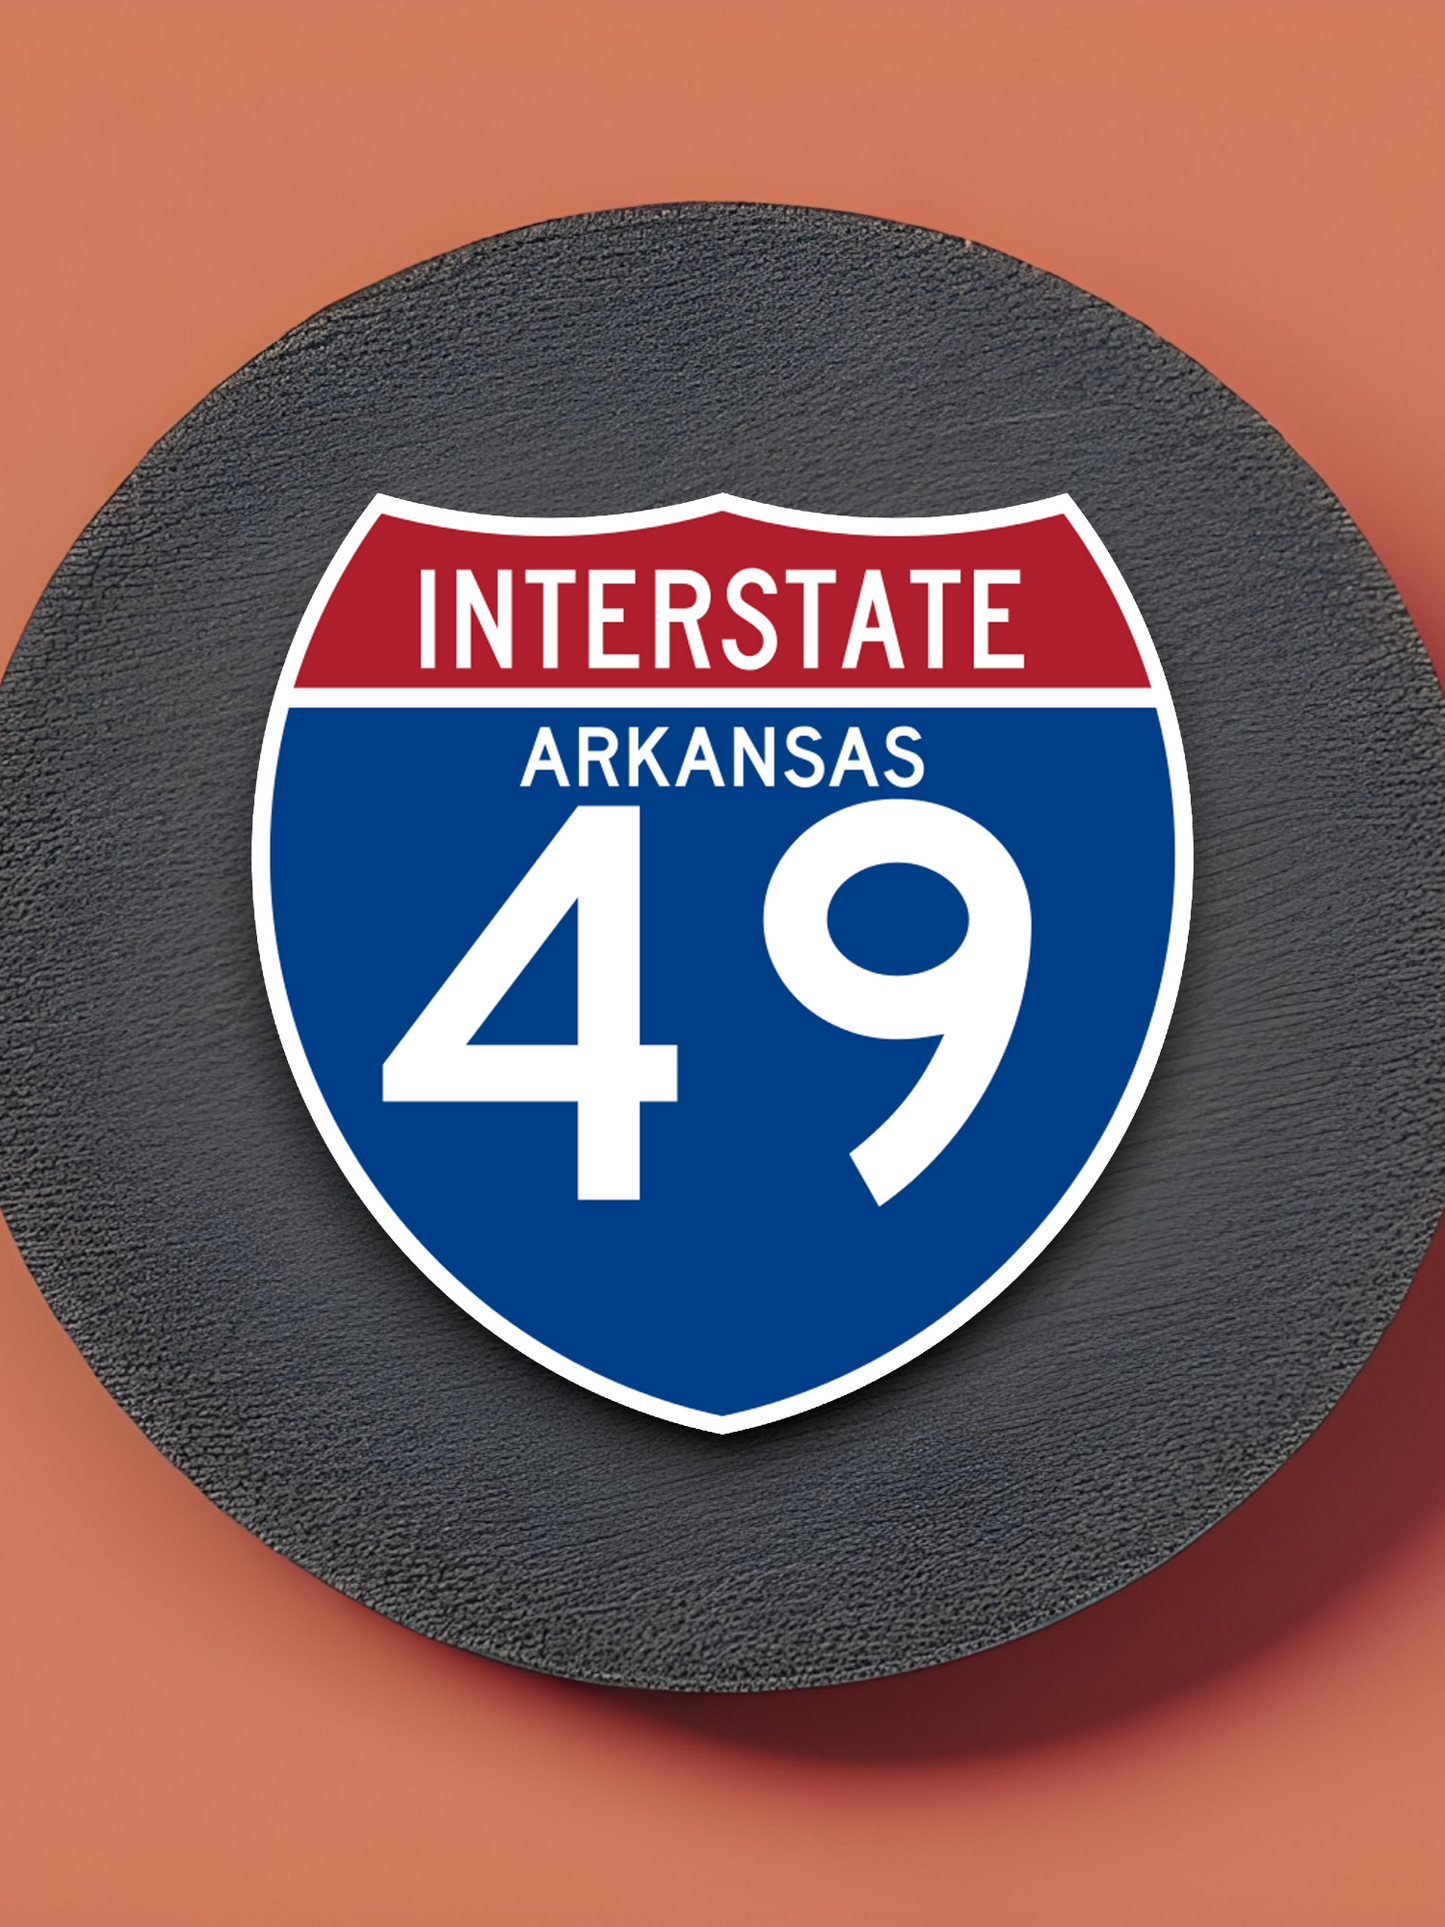 Interstate I-49 Arkansas - Road Sign Sticker